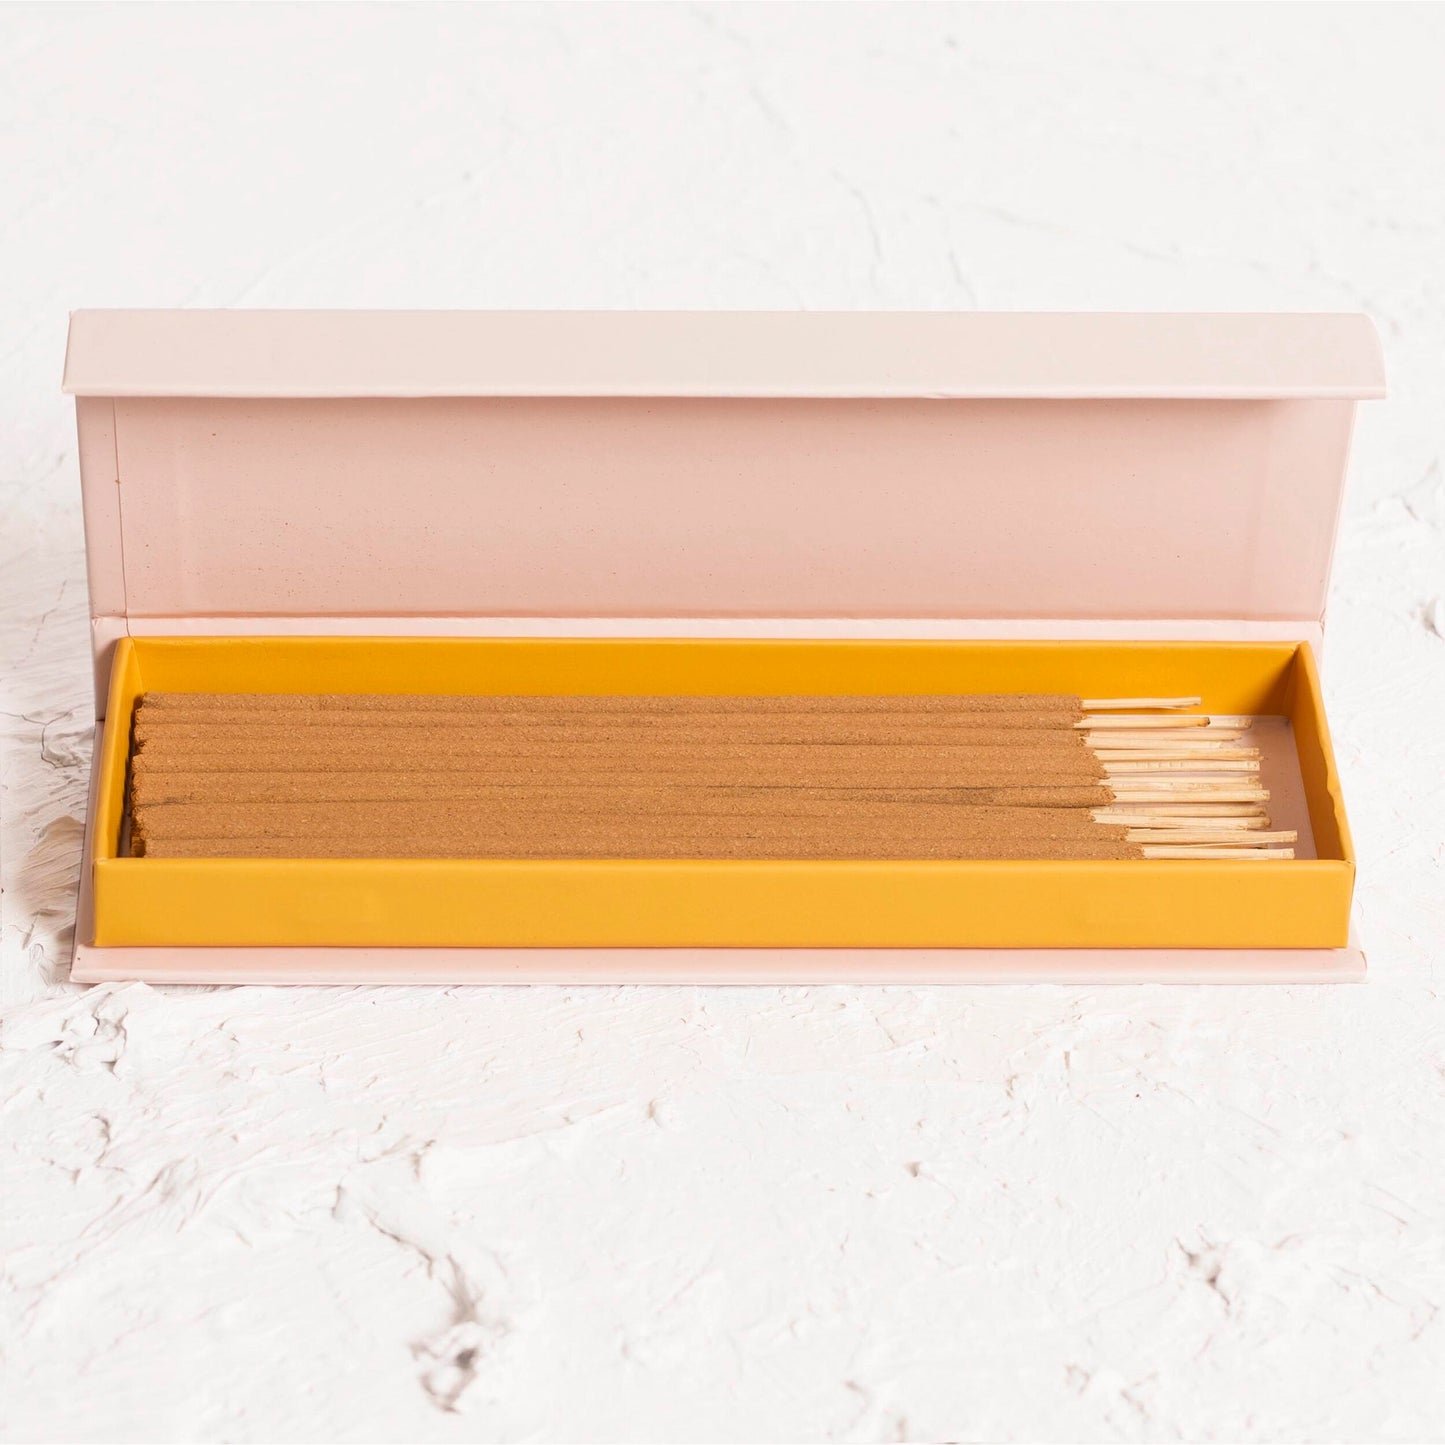 The Golden Altar Natural Incense Box - Nag Champa